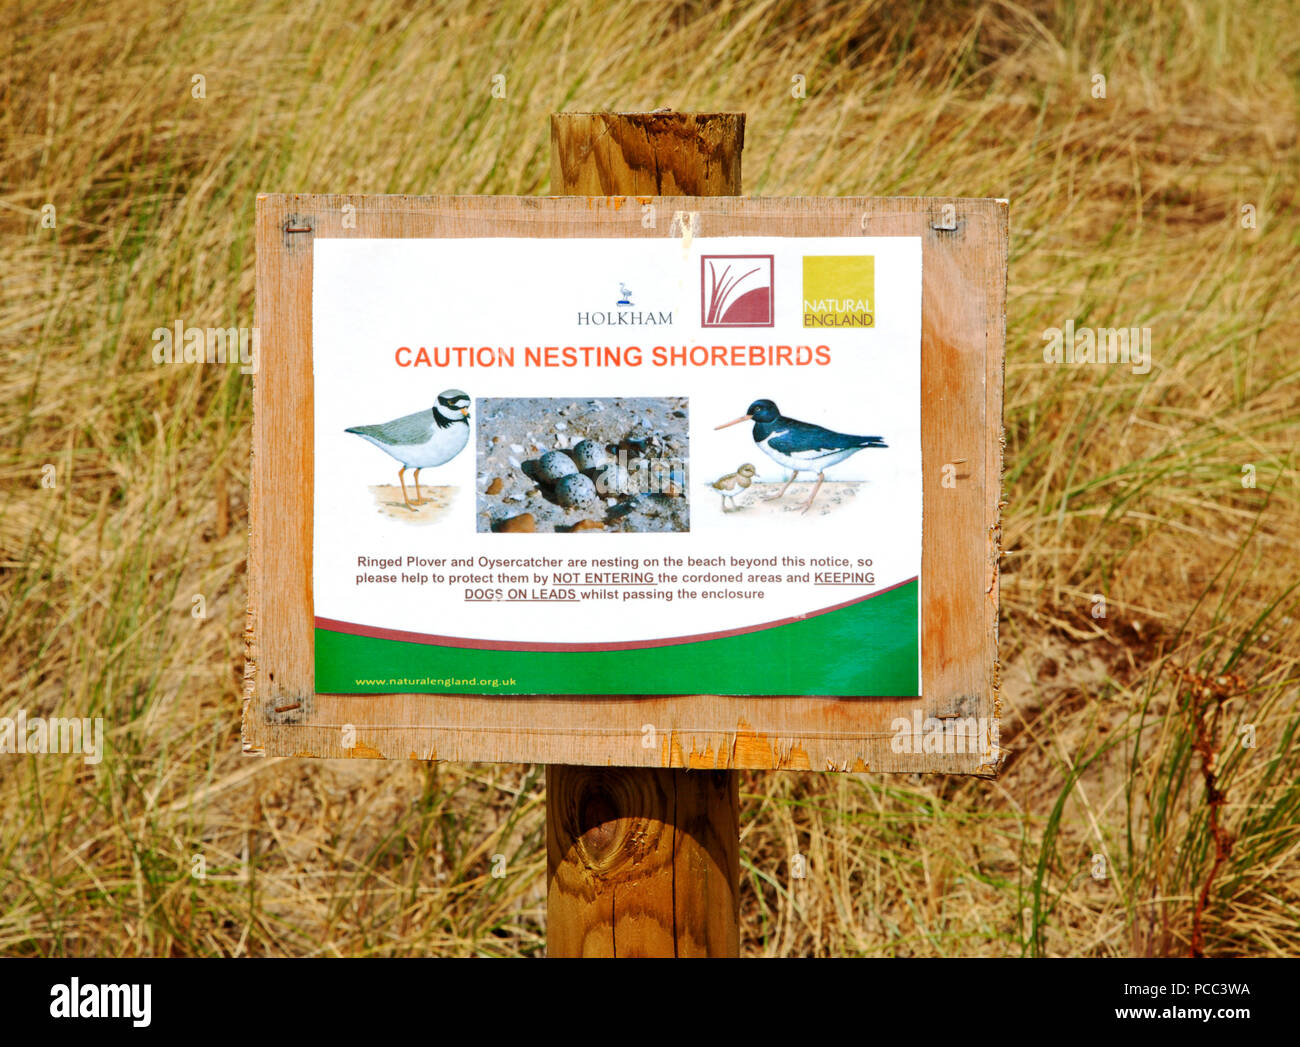 Ein Hinweis für Besucher mit Vorsicht walten zu lassen und sich der Verschachtelung shorebirds bei Burnham Overy Staithe, in der Nähe von Holkham, Norfolk, England, Grossbritannien, Europa. Stockfoto